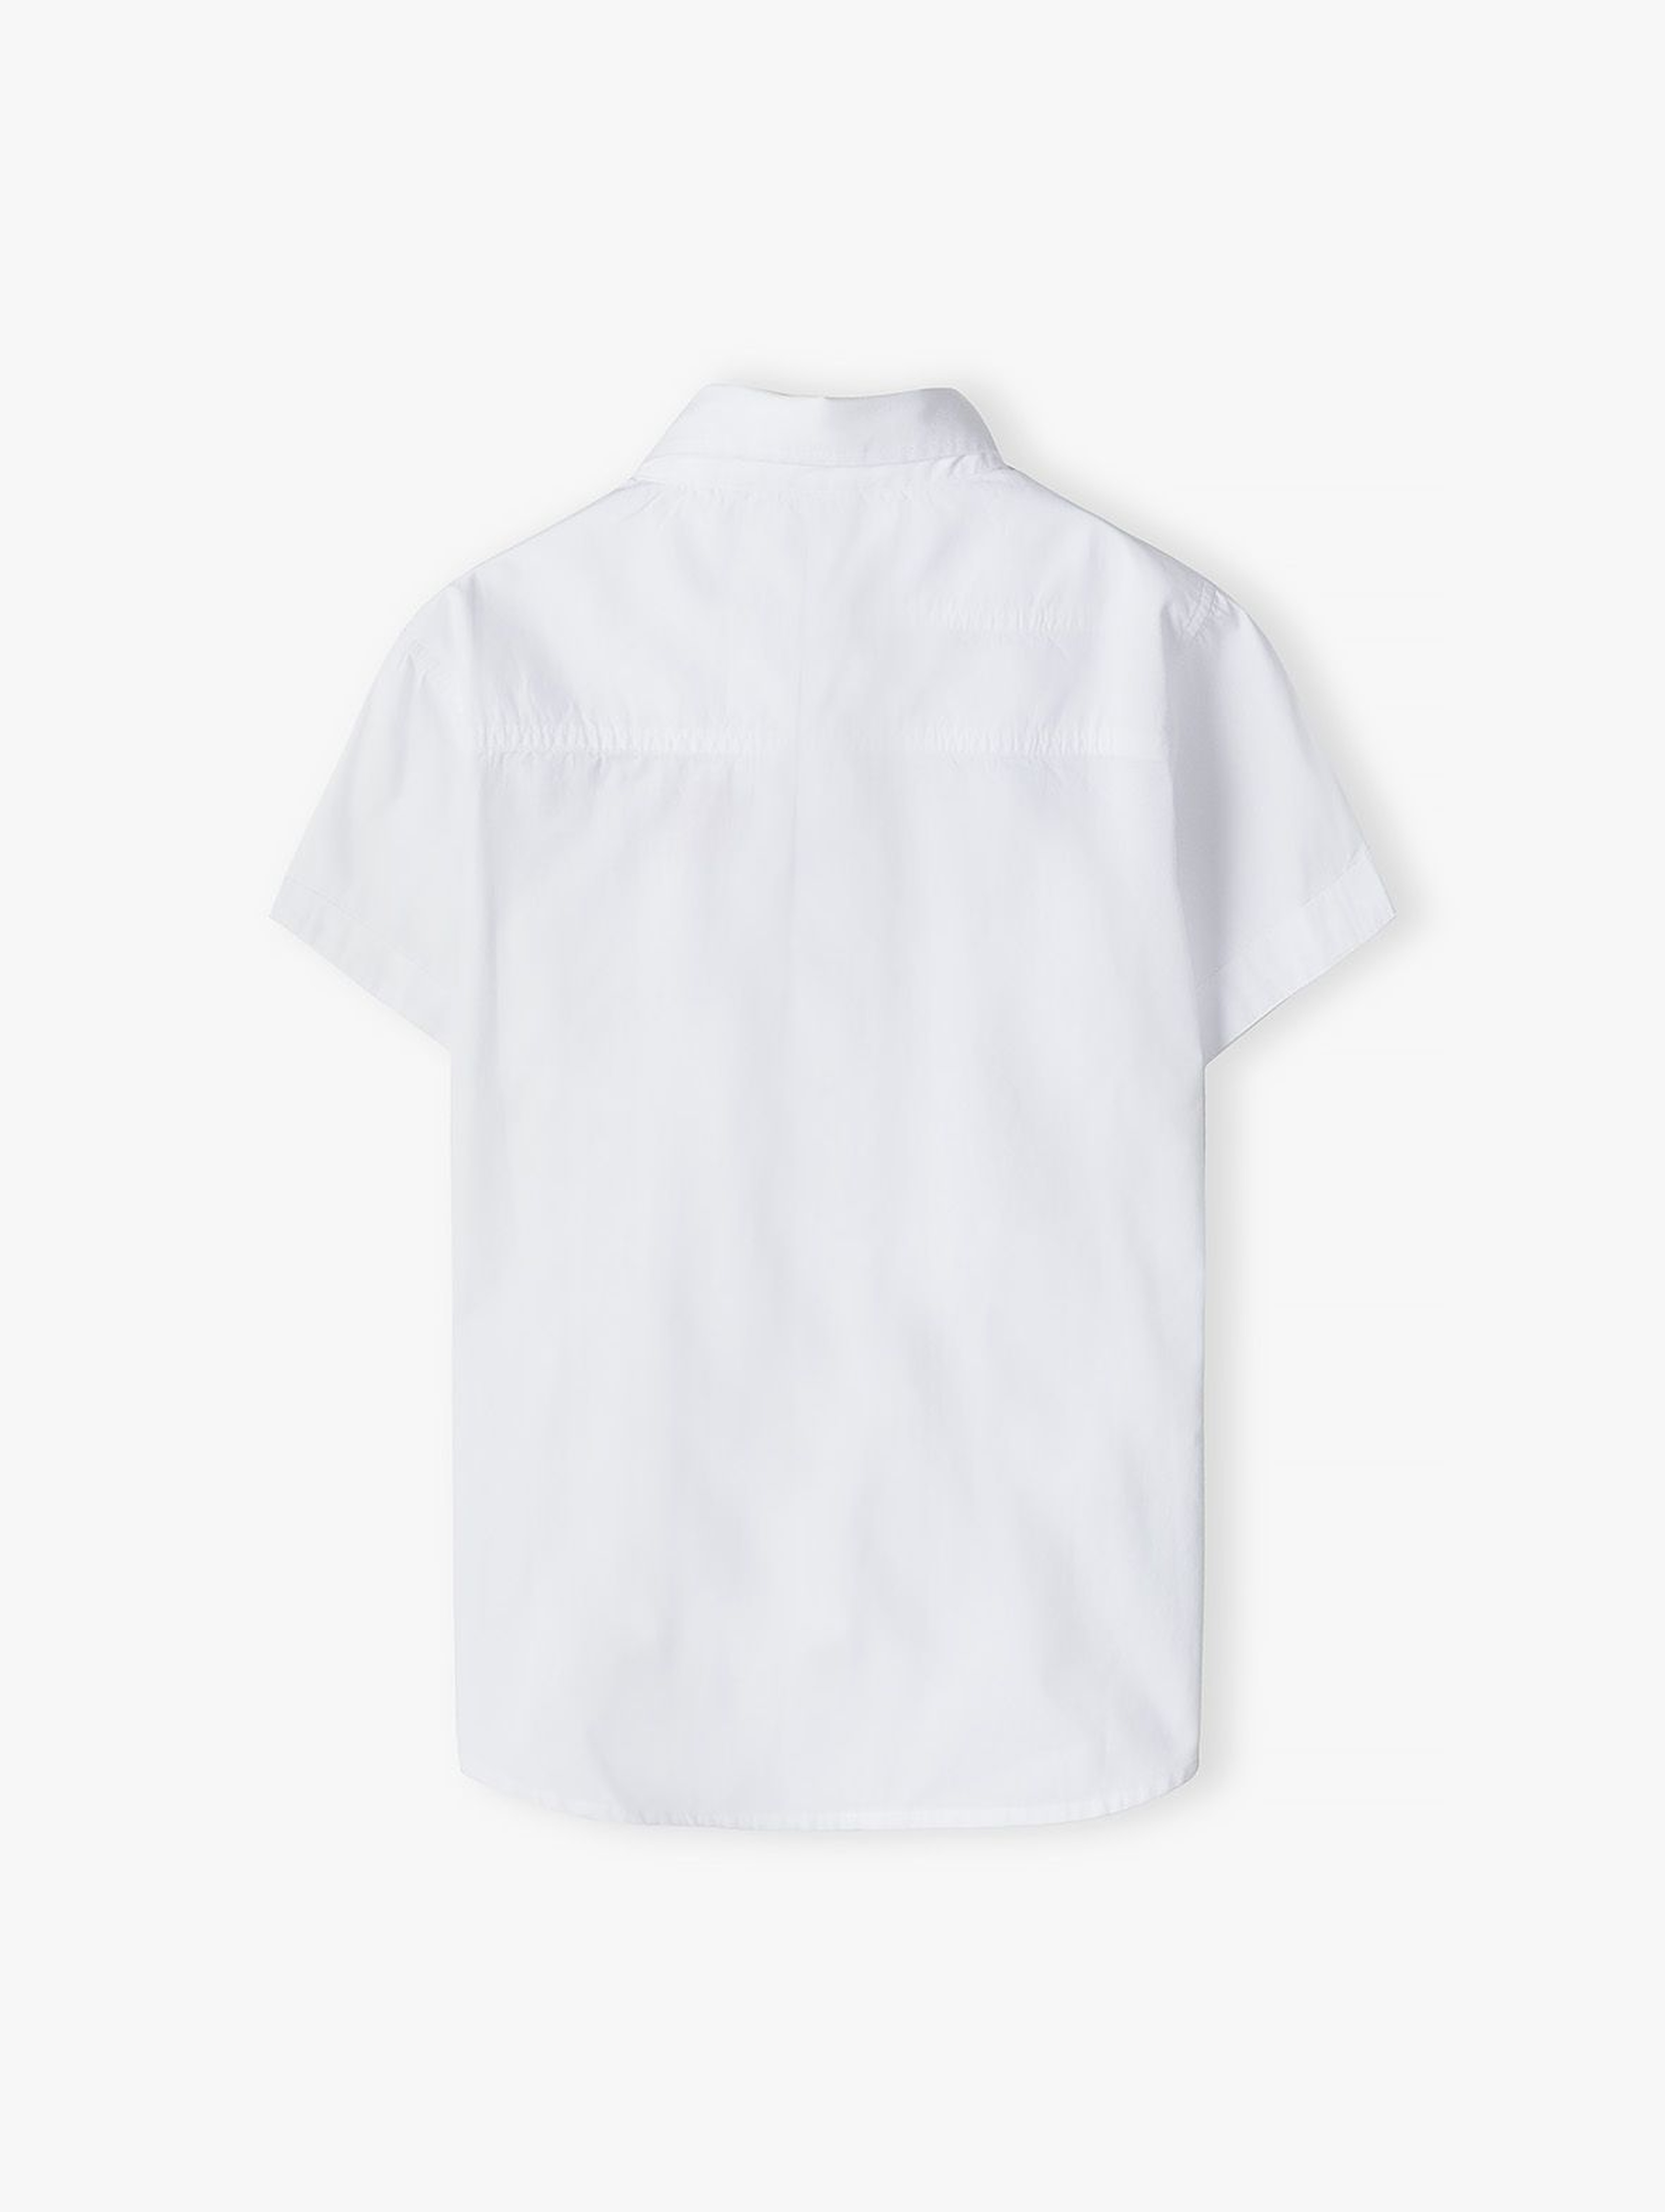 Biała koszula dla chłopca z krótkim rękawem